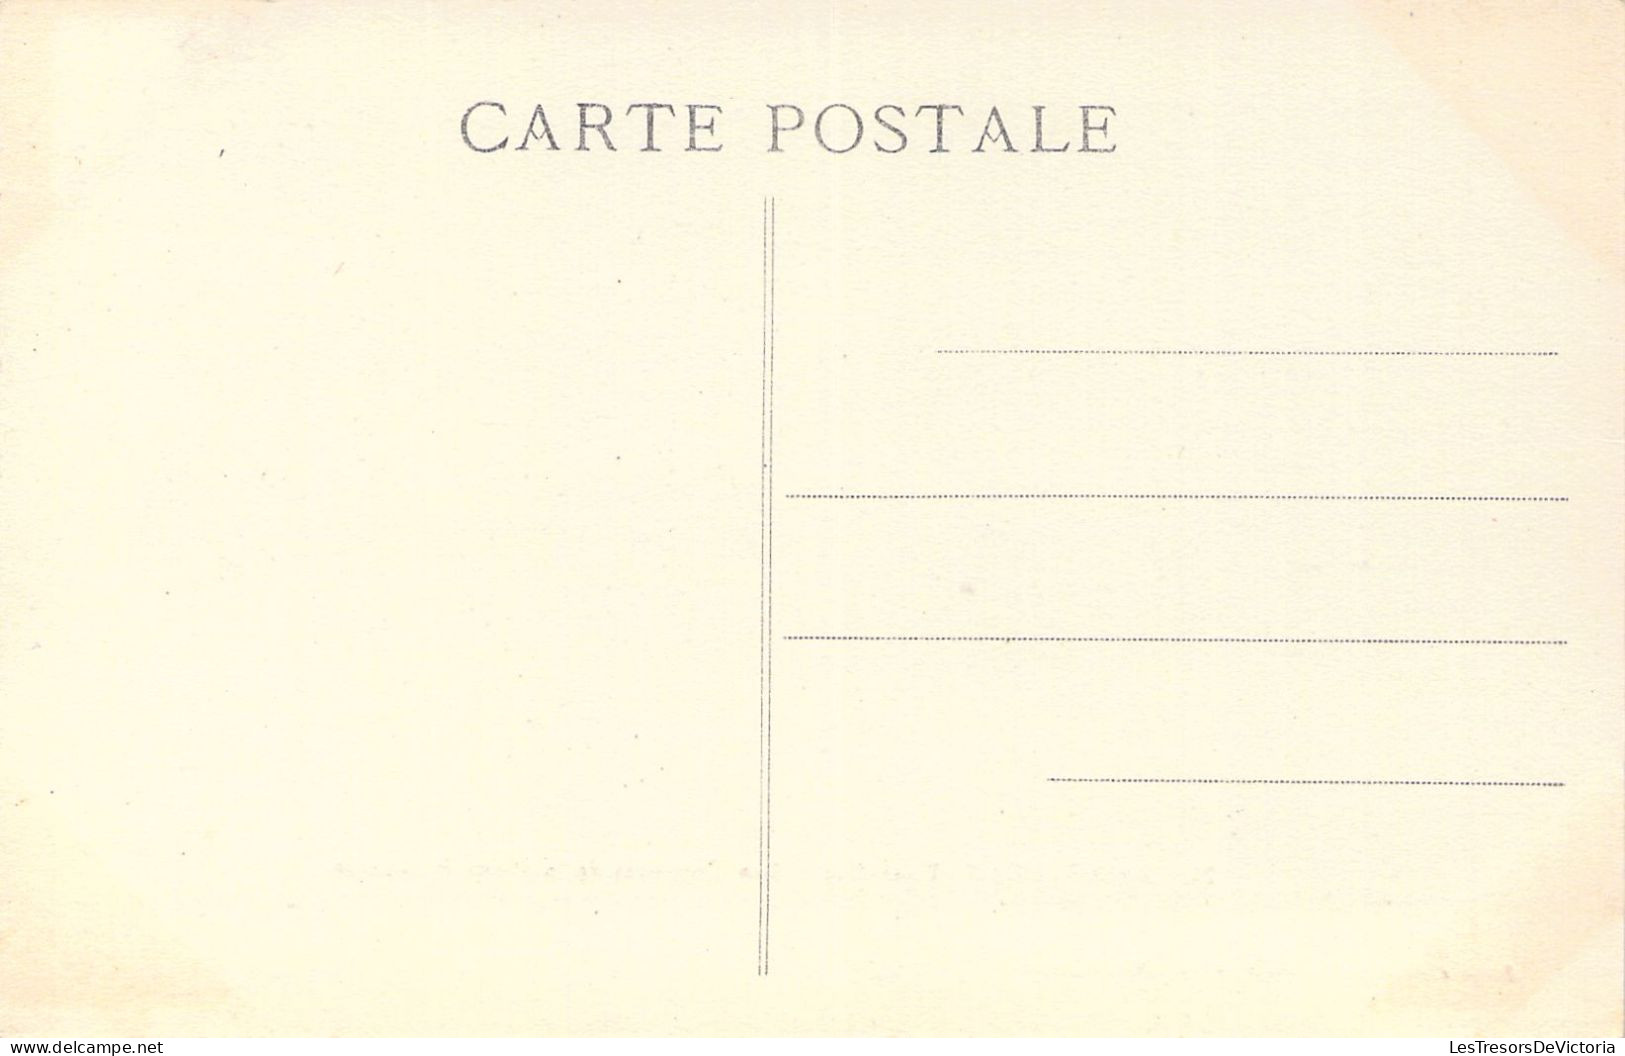 FRANCE - 82 - MONTAUBAN - Les Couverts De La Place Nationale - Carte Postale Ancienne - Montauban